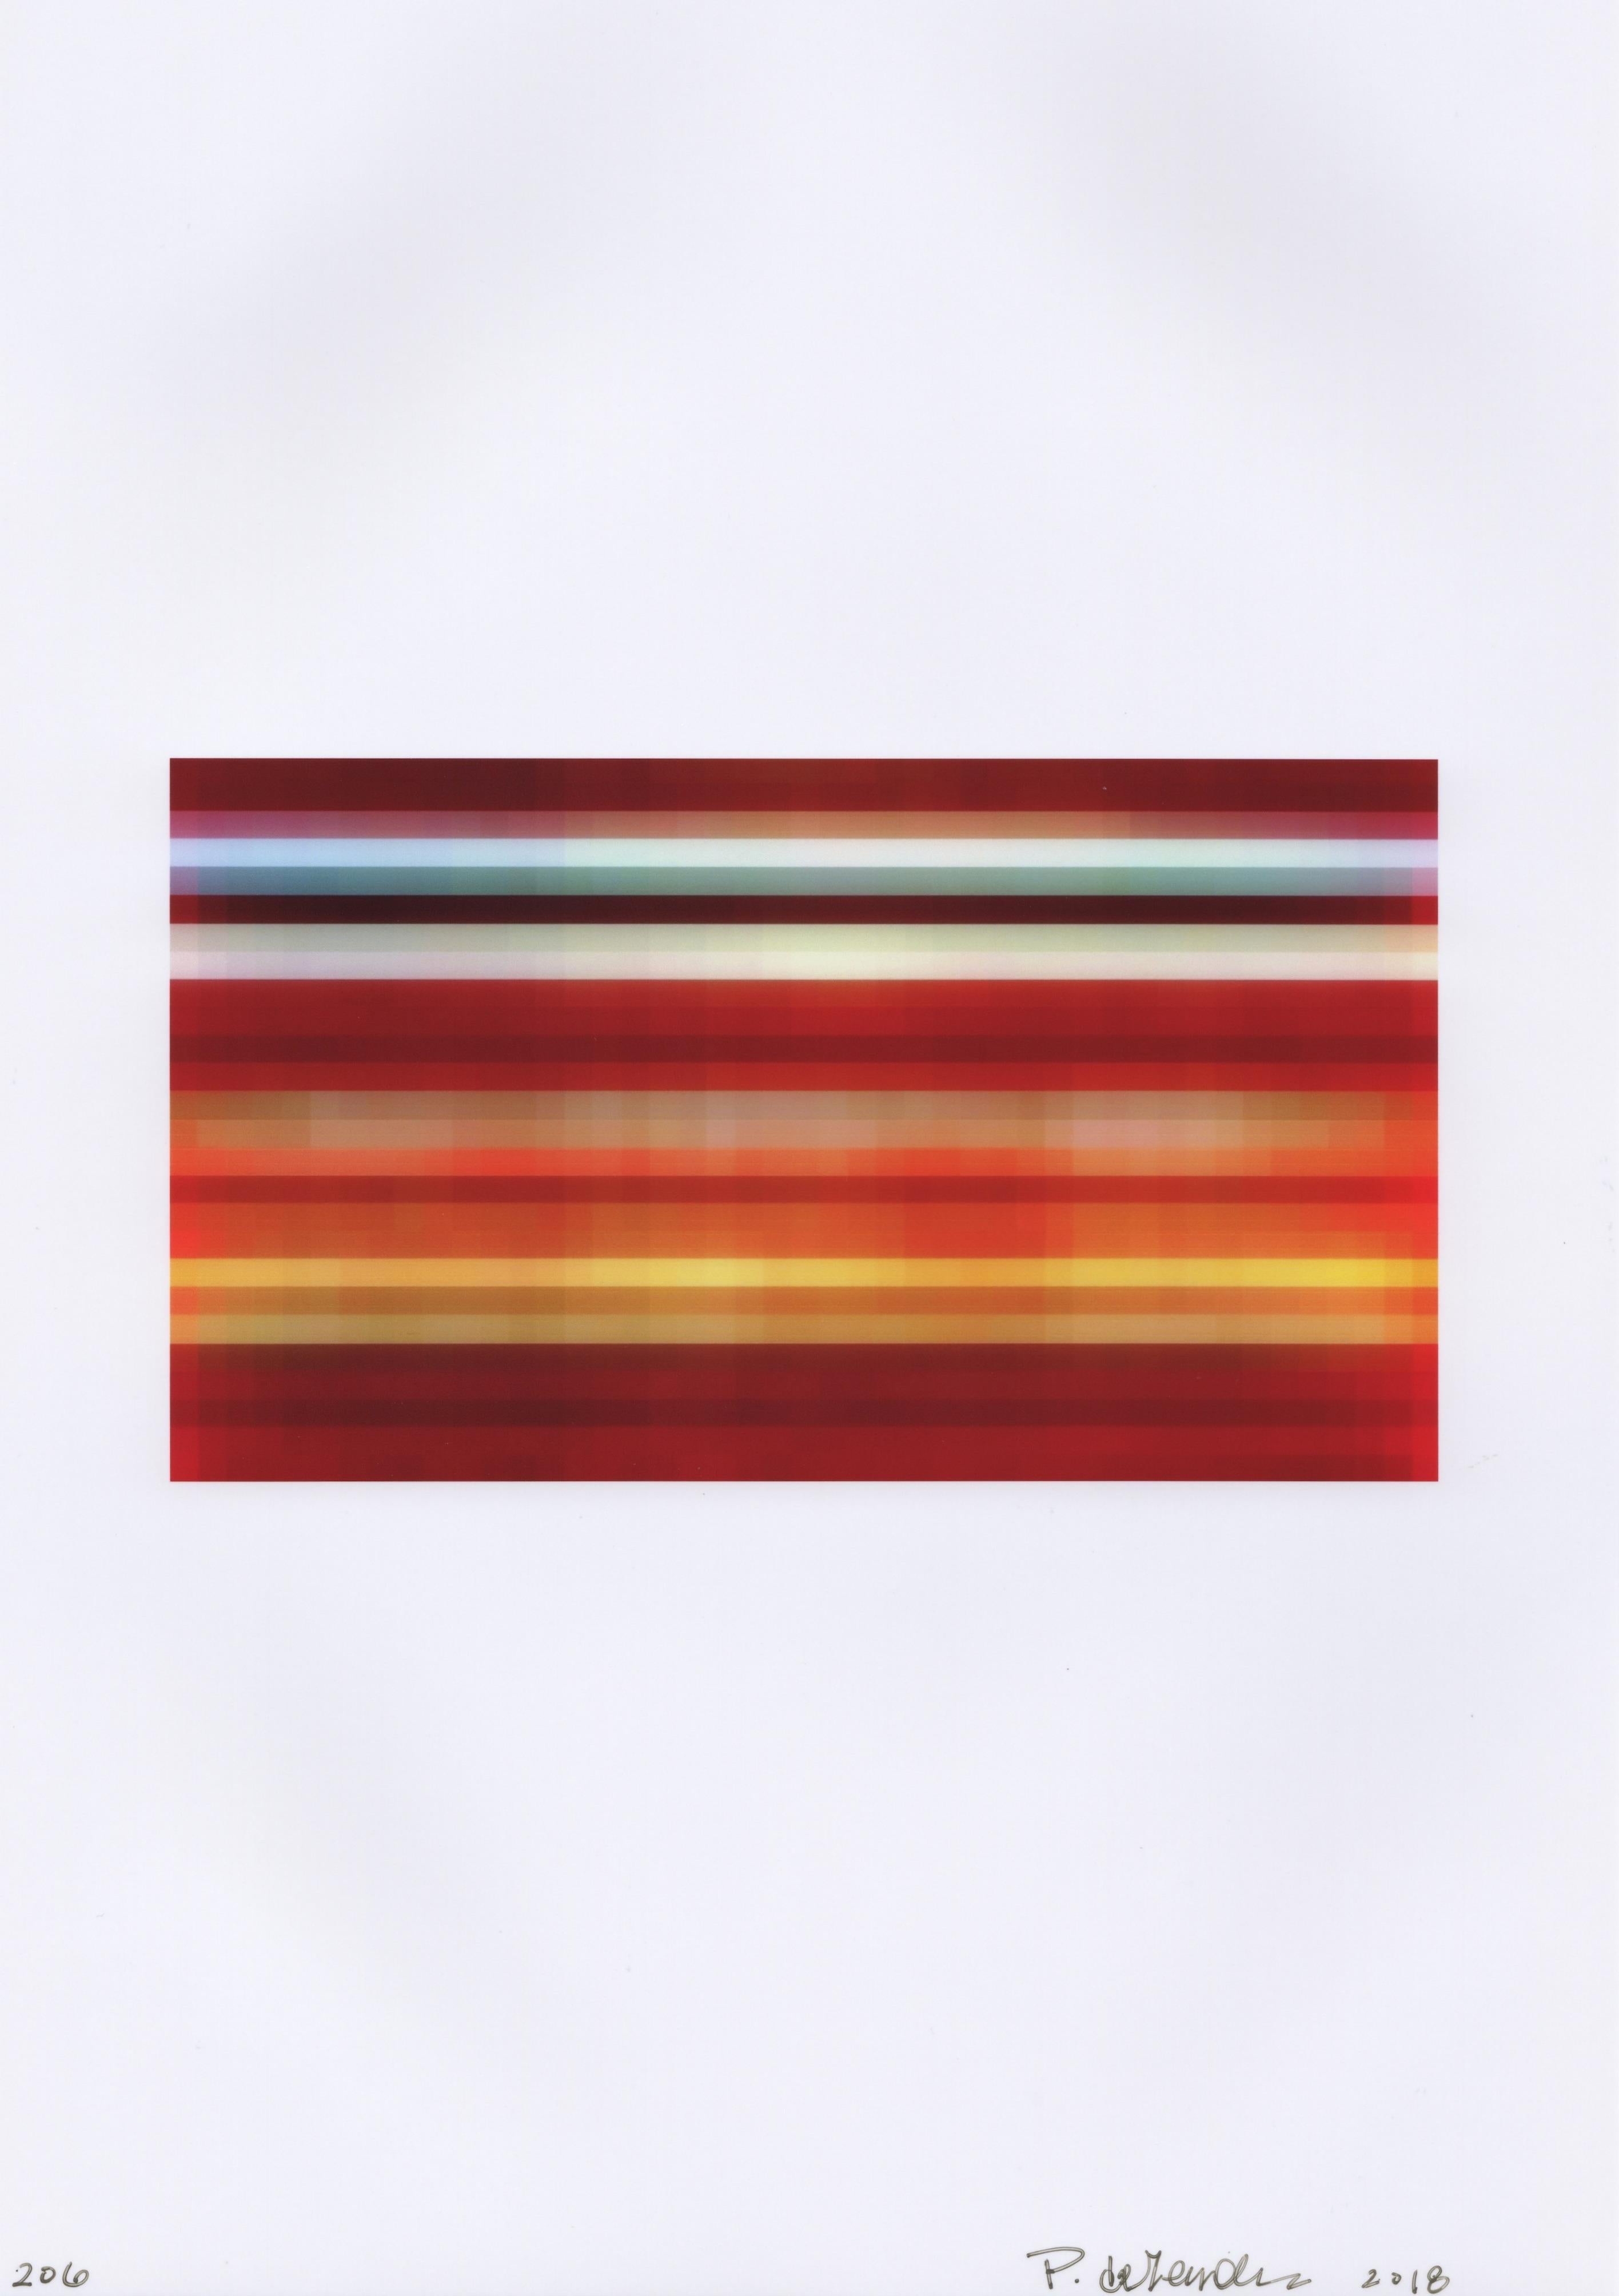 Broken Television 206, abstrait, rouge, orange, jaune, photo, impression numérique - Print de Patty deGrandpre